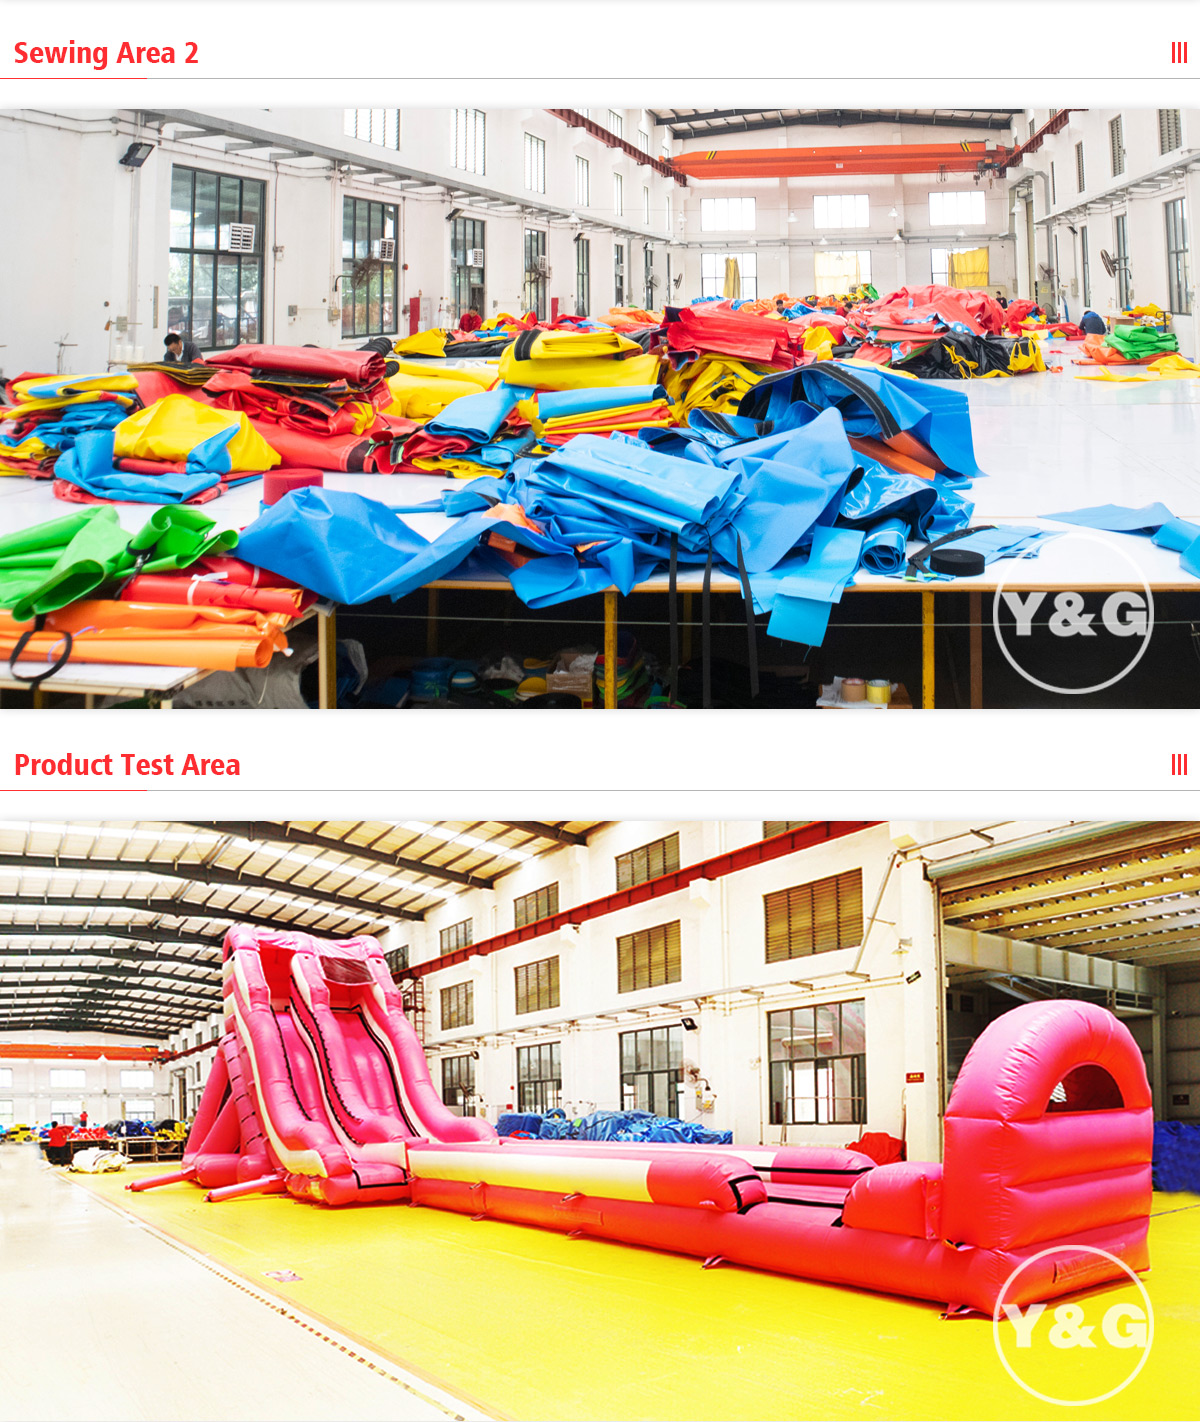 Ocean Theme Inflatable ParkYGIP-11